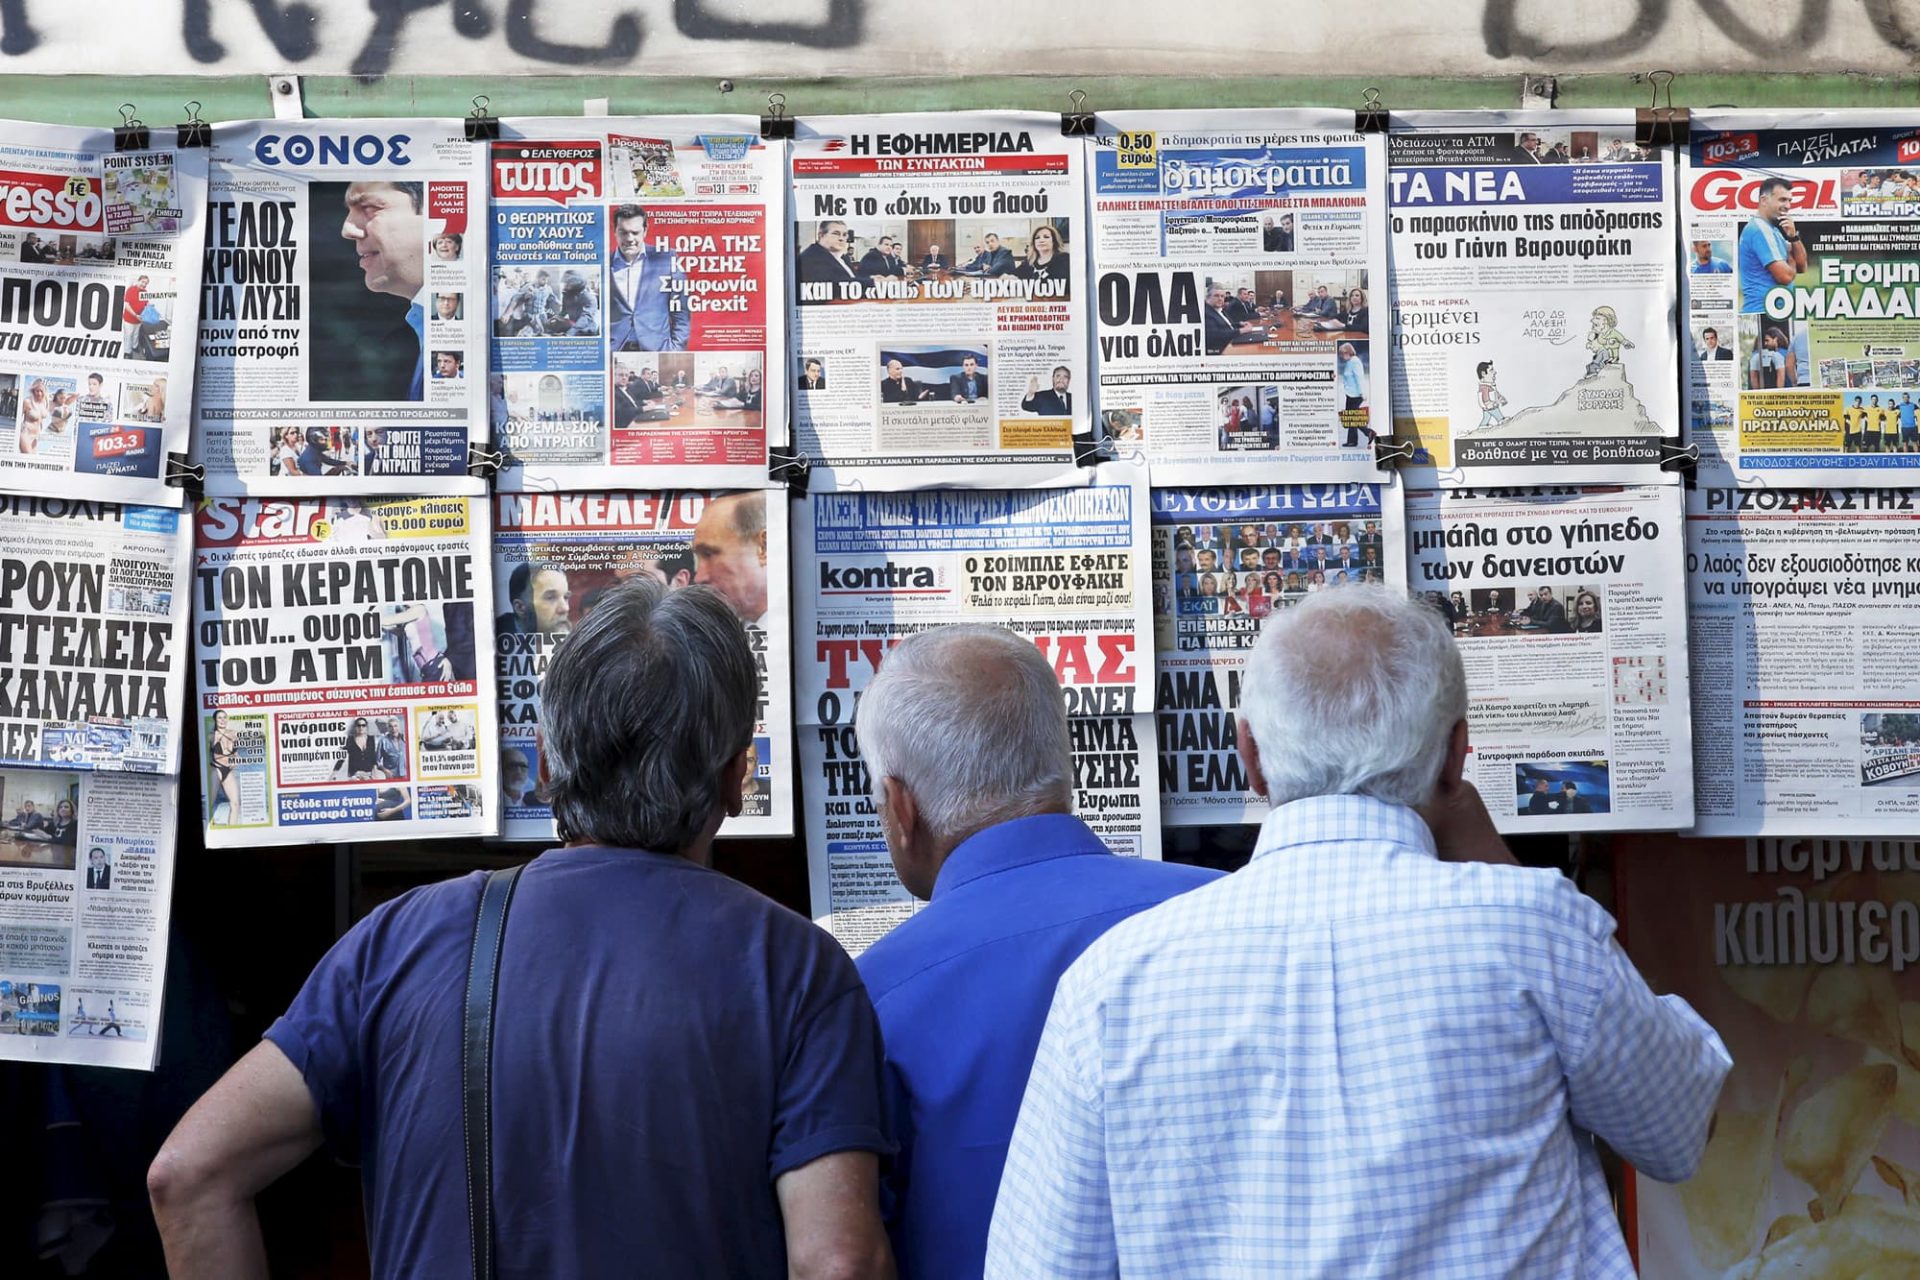 Grecia închide ochii la cazuri de spionaj, violență și procese abuzive împotriva jurnaliștilor